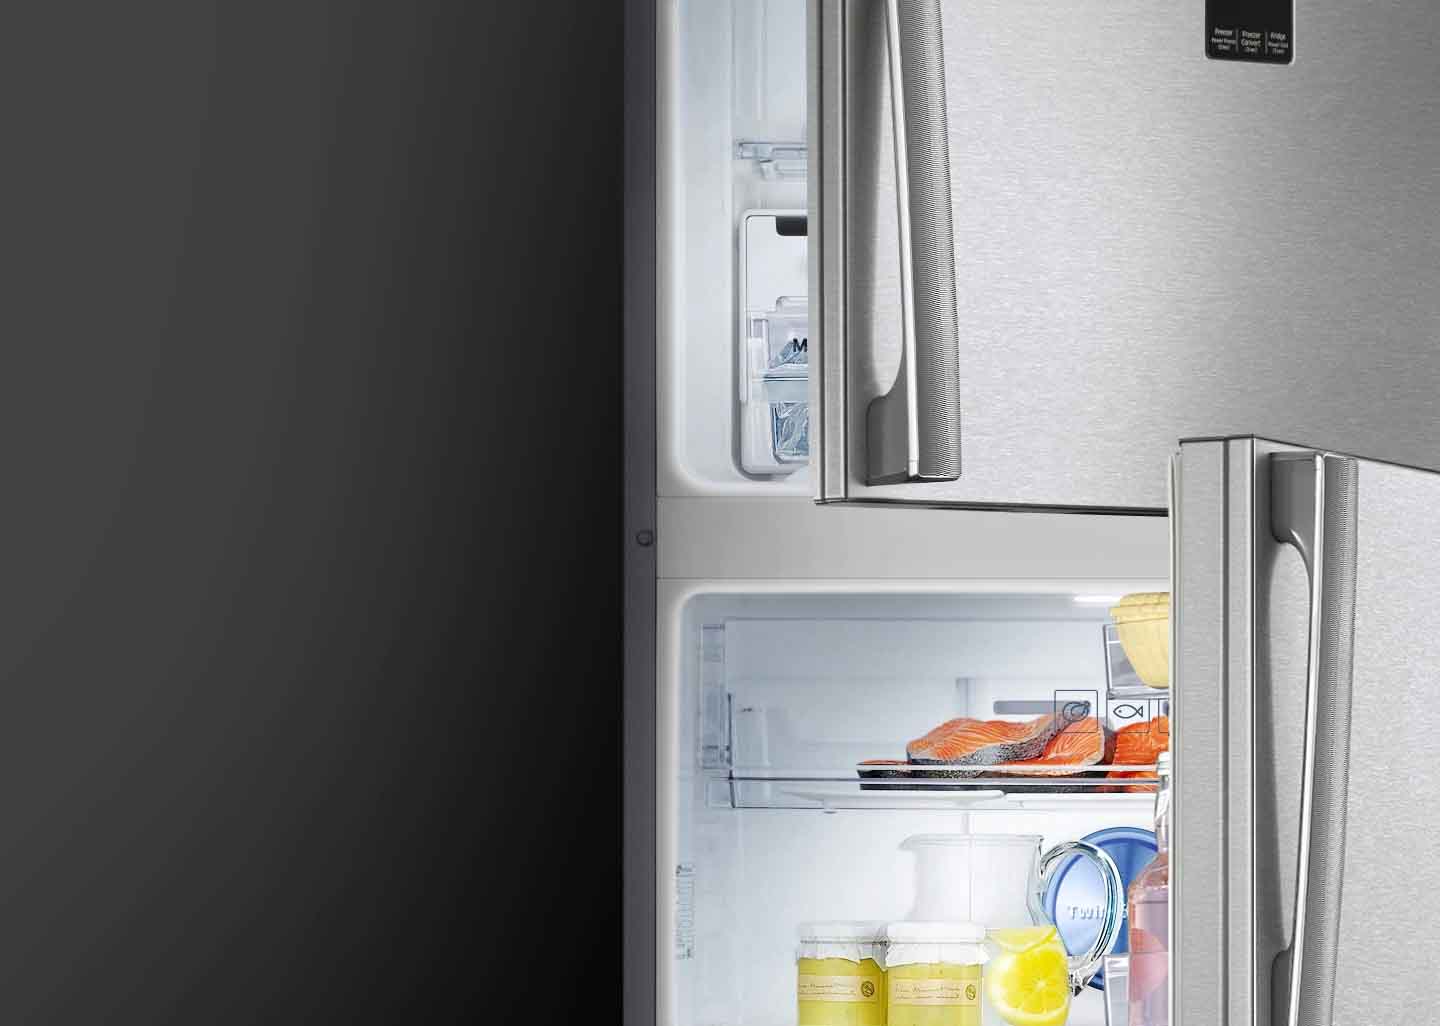 Tủ lạnh Samsung Inverter 308 Lít RT29K5532S8/SV